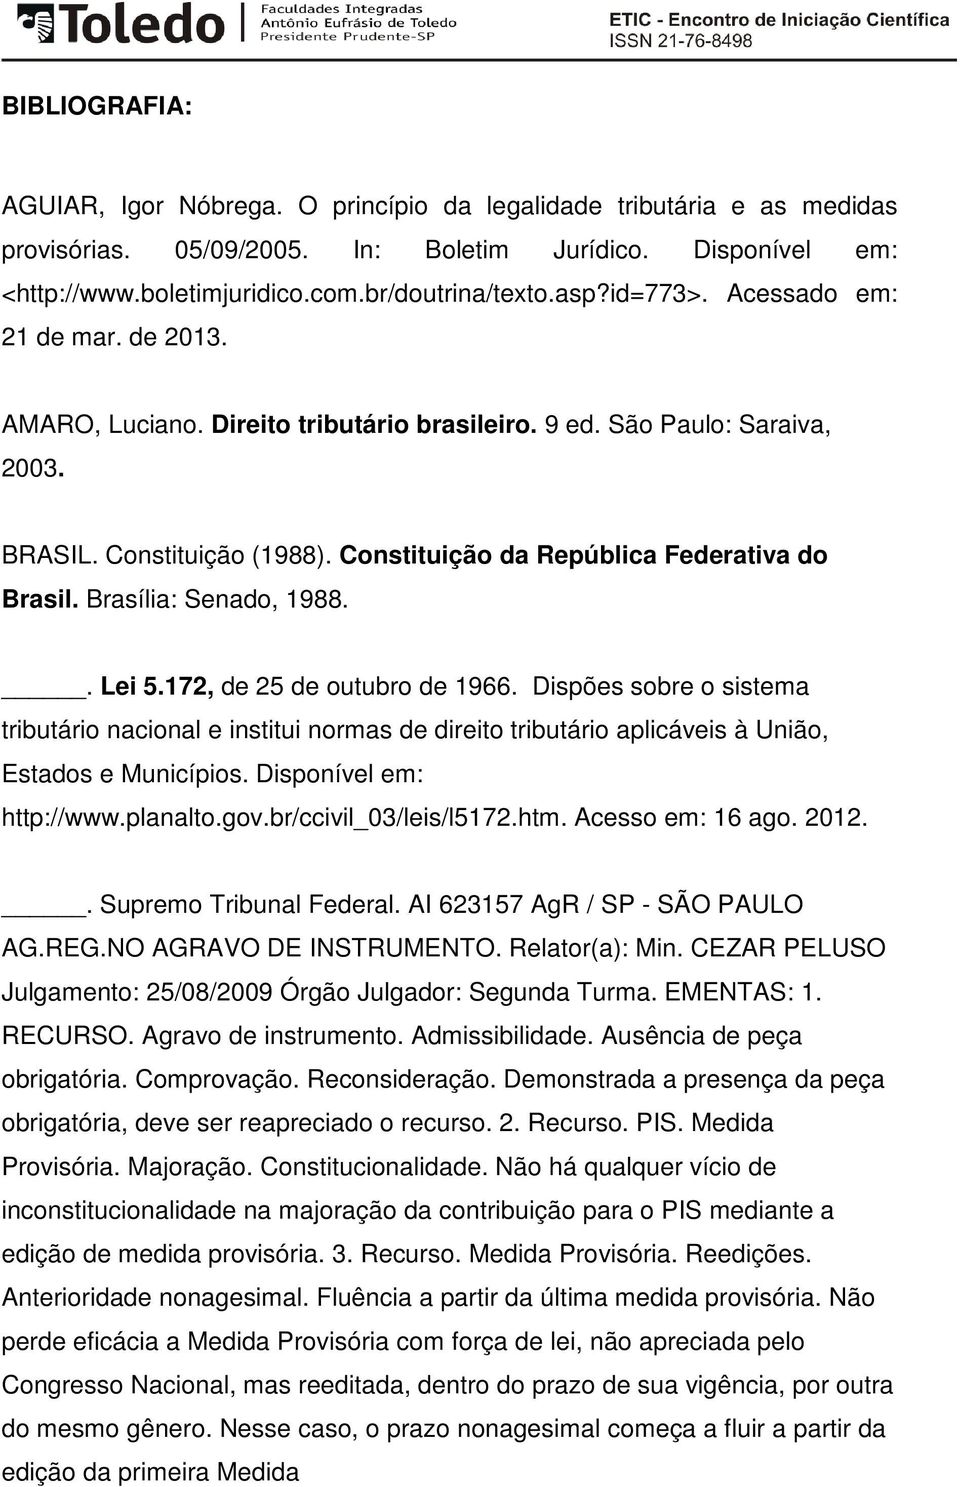 Constituição da República Federativa do Brasil. Brasília: Senado, 1988.. Lei 5.172, de 25 de outubro de 1966.